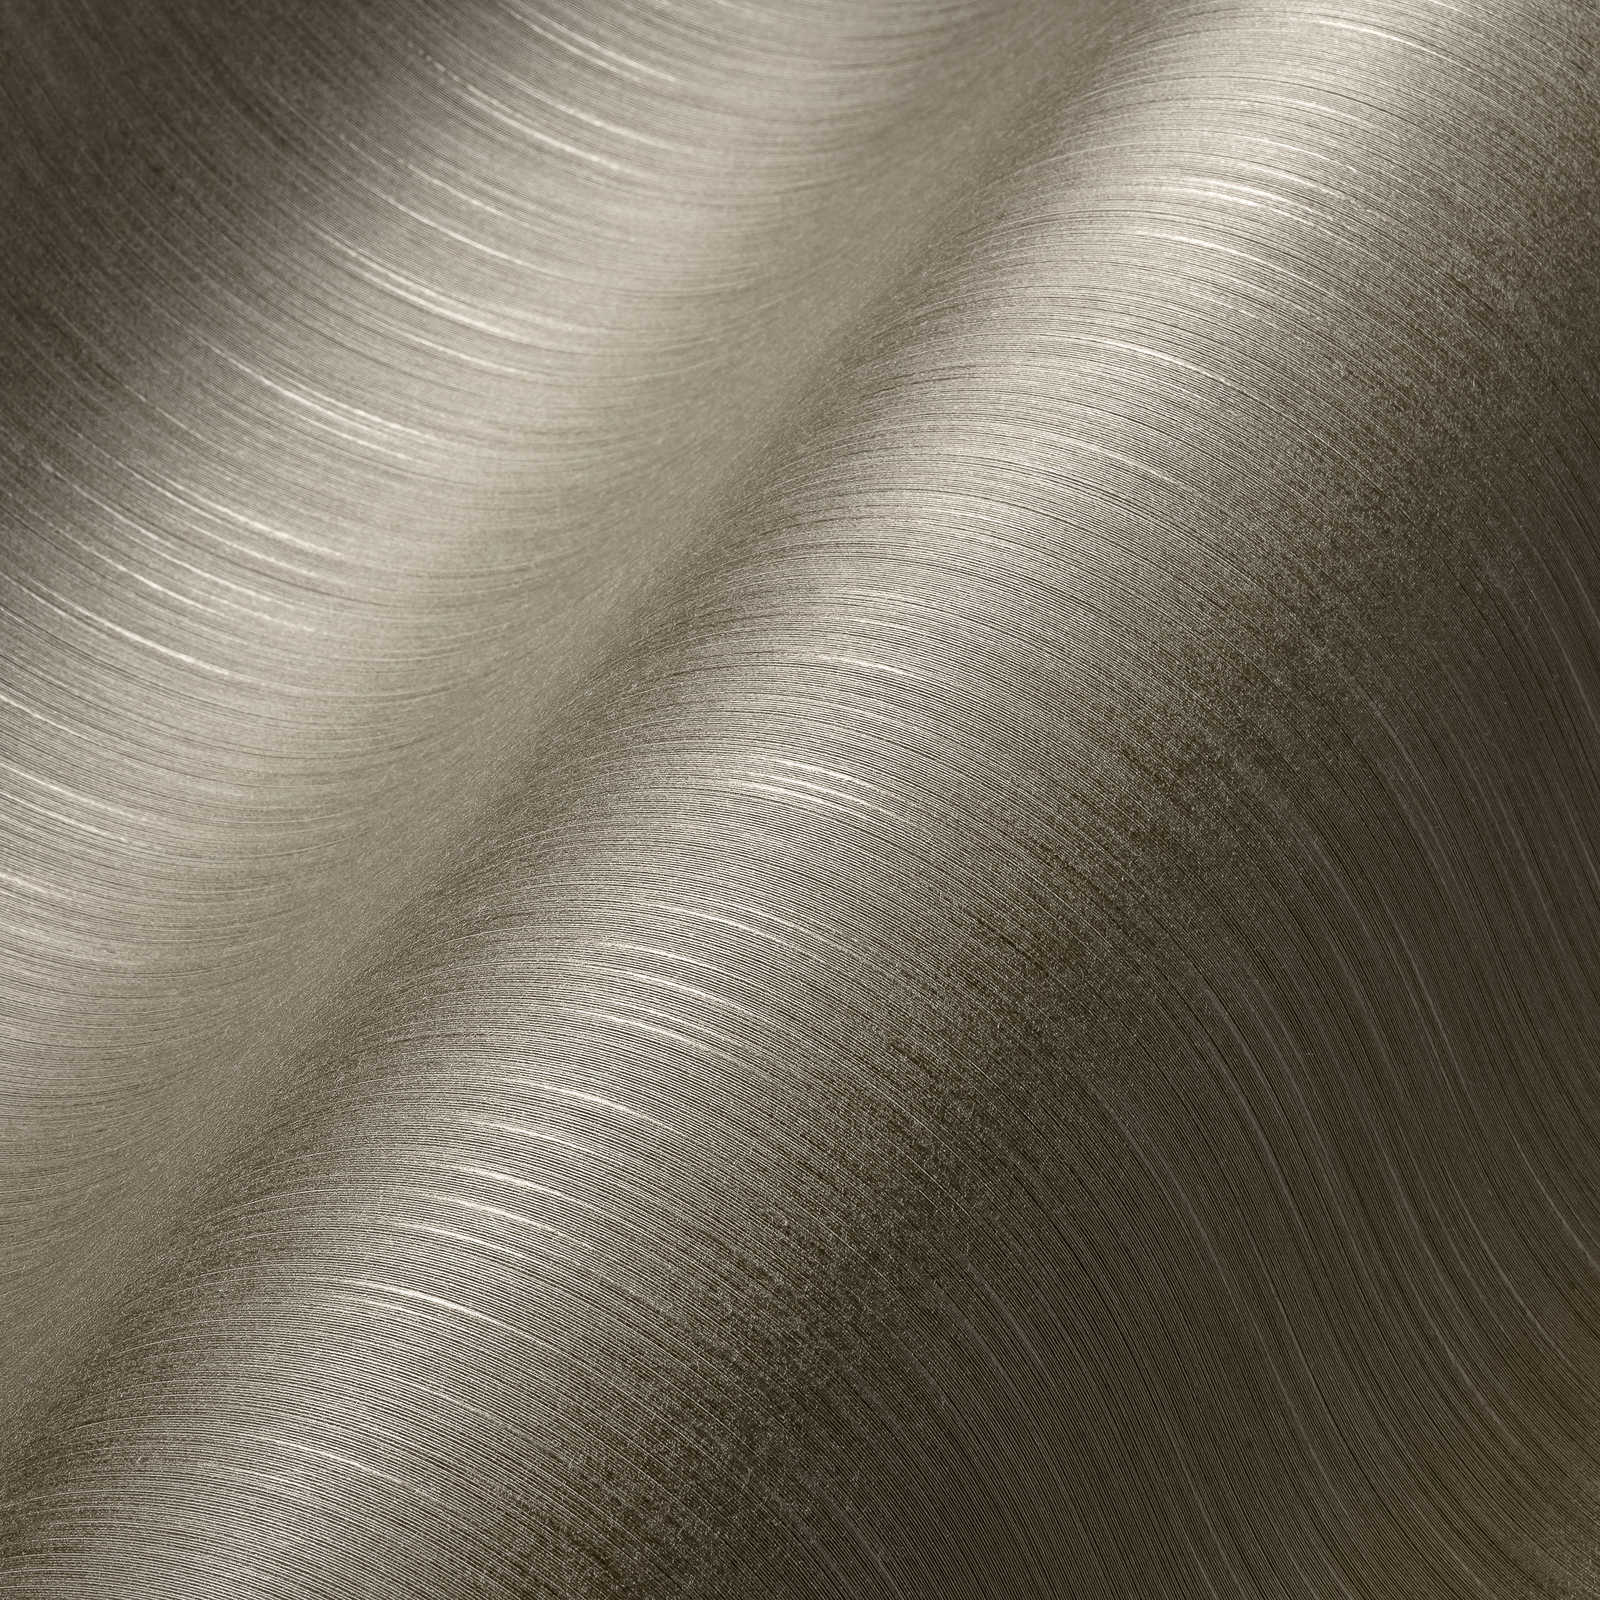             Papier peint design textile gris-marron avec motif chiné
        